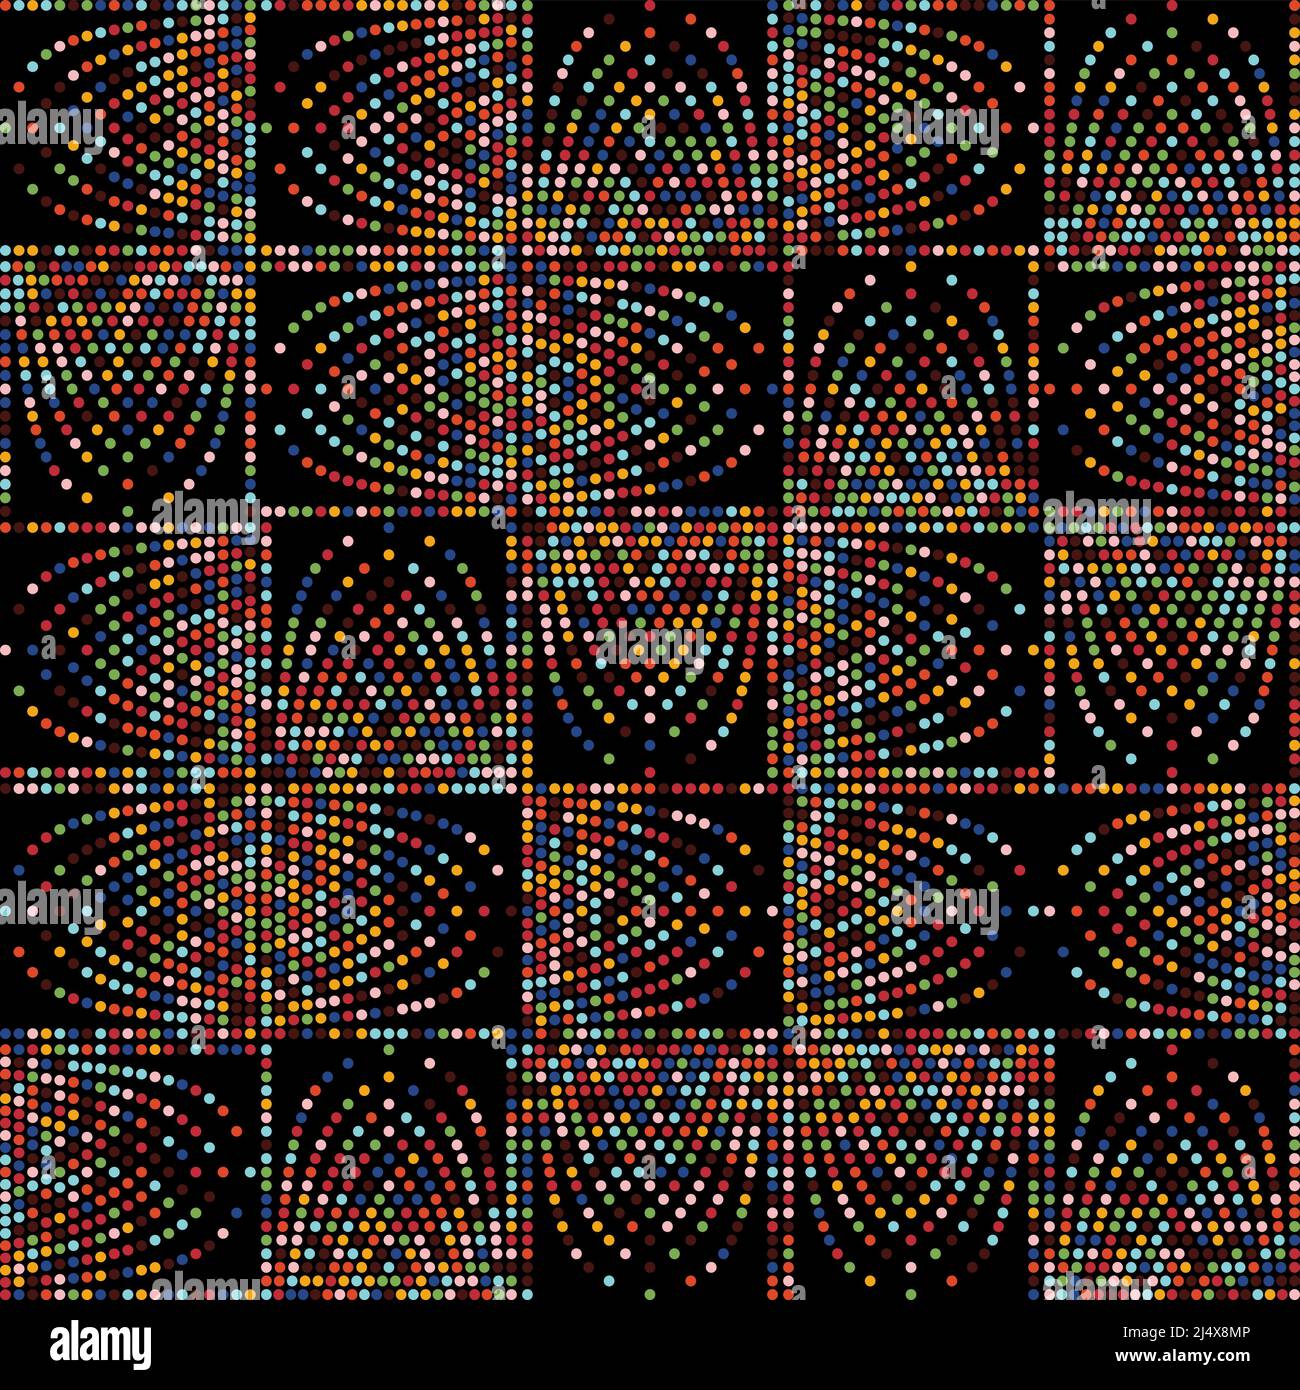 Noise Art disegno grafico digitale realizzato con forme vettoriali astratte e forme geometriche generative, utile per il web background, poster art design, maga Illustrazione Vettoriale